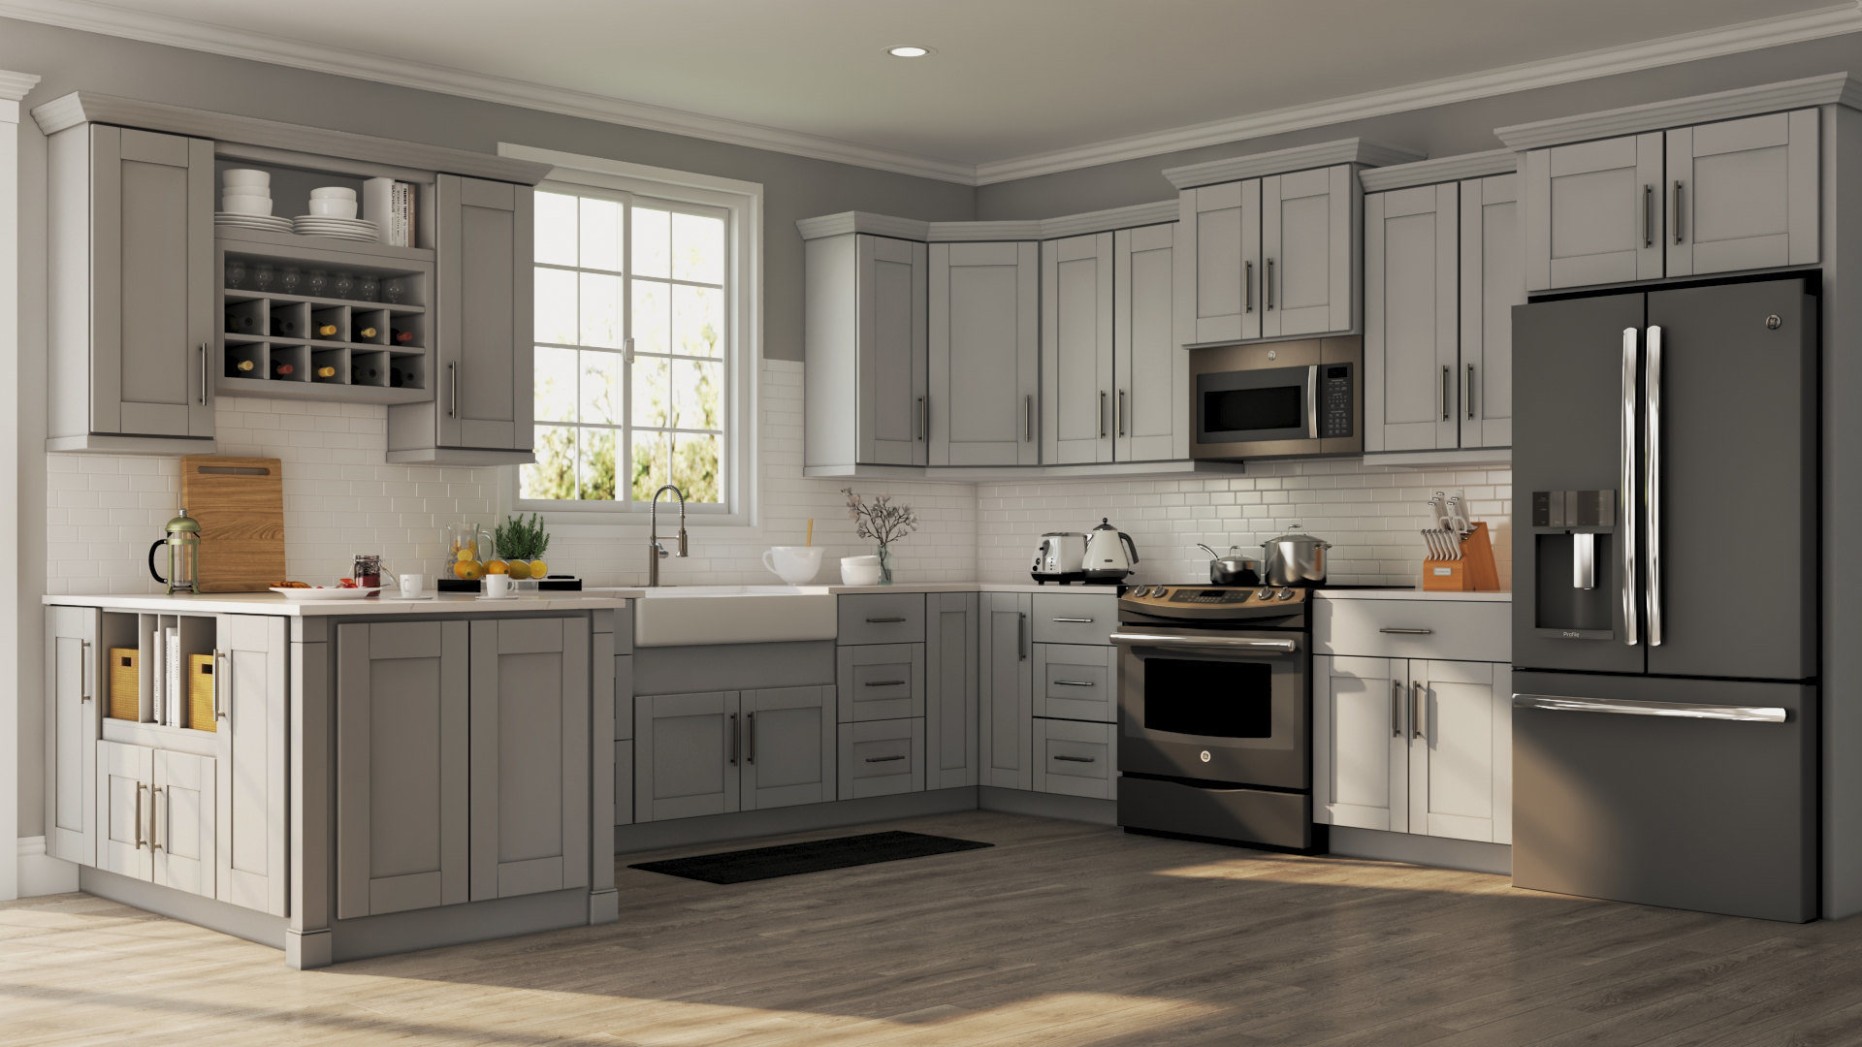 Shaker Cabinet Accessories in Dove Gray – Kitchen – The Home Depot - gray kitchen accessories